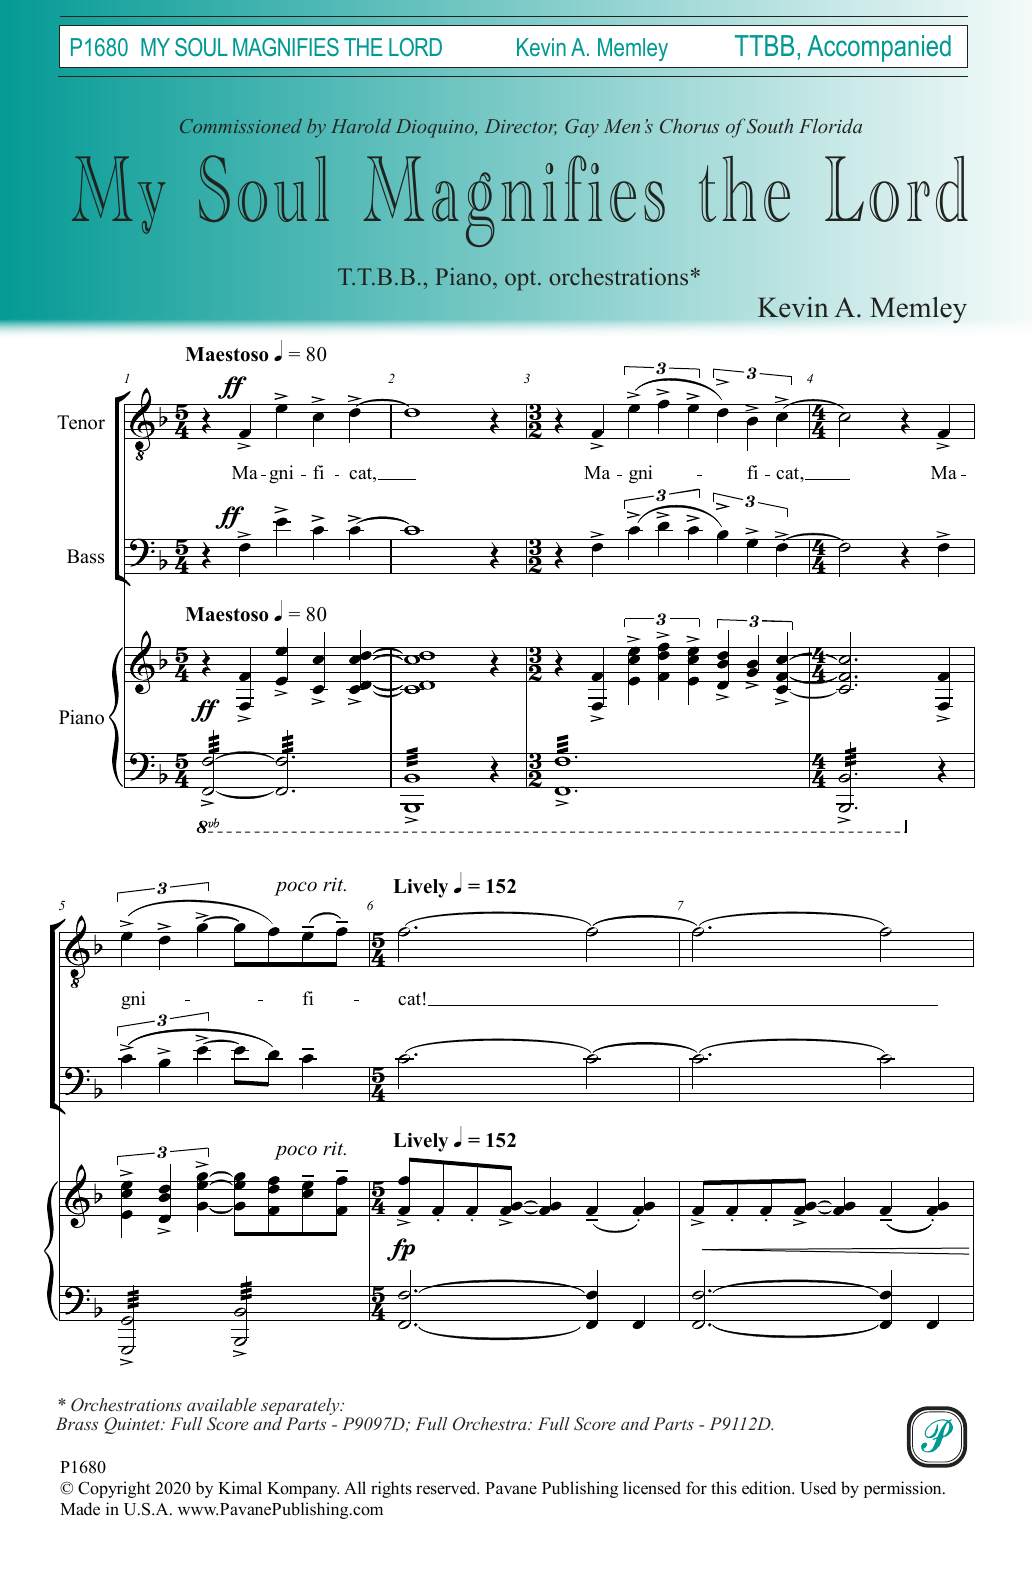 My Soul Magnifies the Lord (TTBB Choir) von Kevin A. Memley